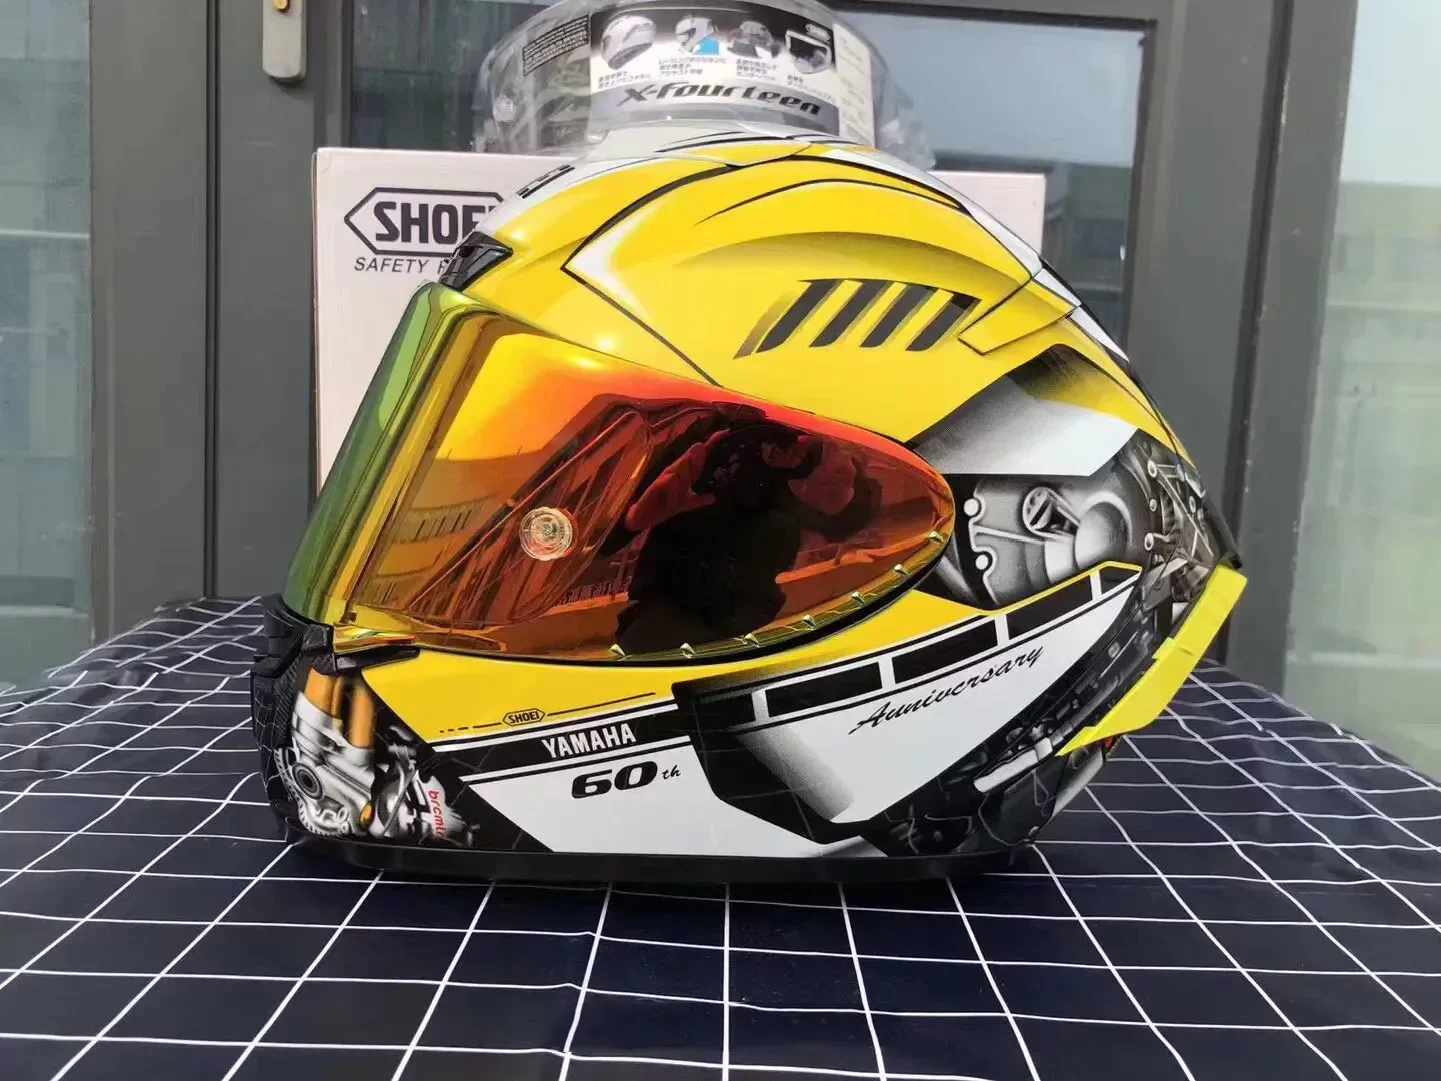 

Full Face shoei X14 yaha rjm 60 Helmet anti-fog visor Man Riding Car motocross racing motorbike helmet-NOT-ORIGINAL-hel224M